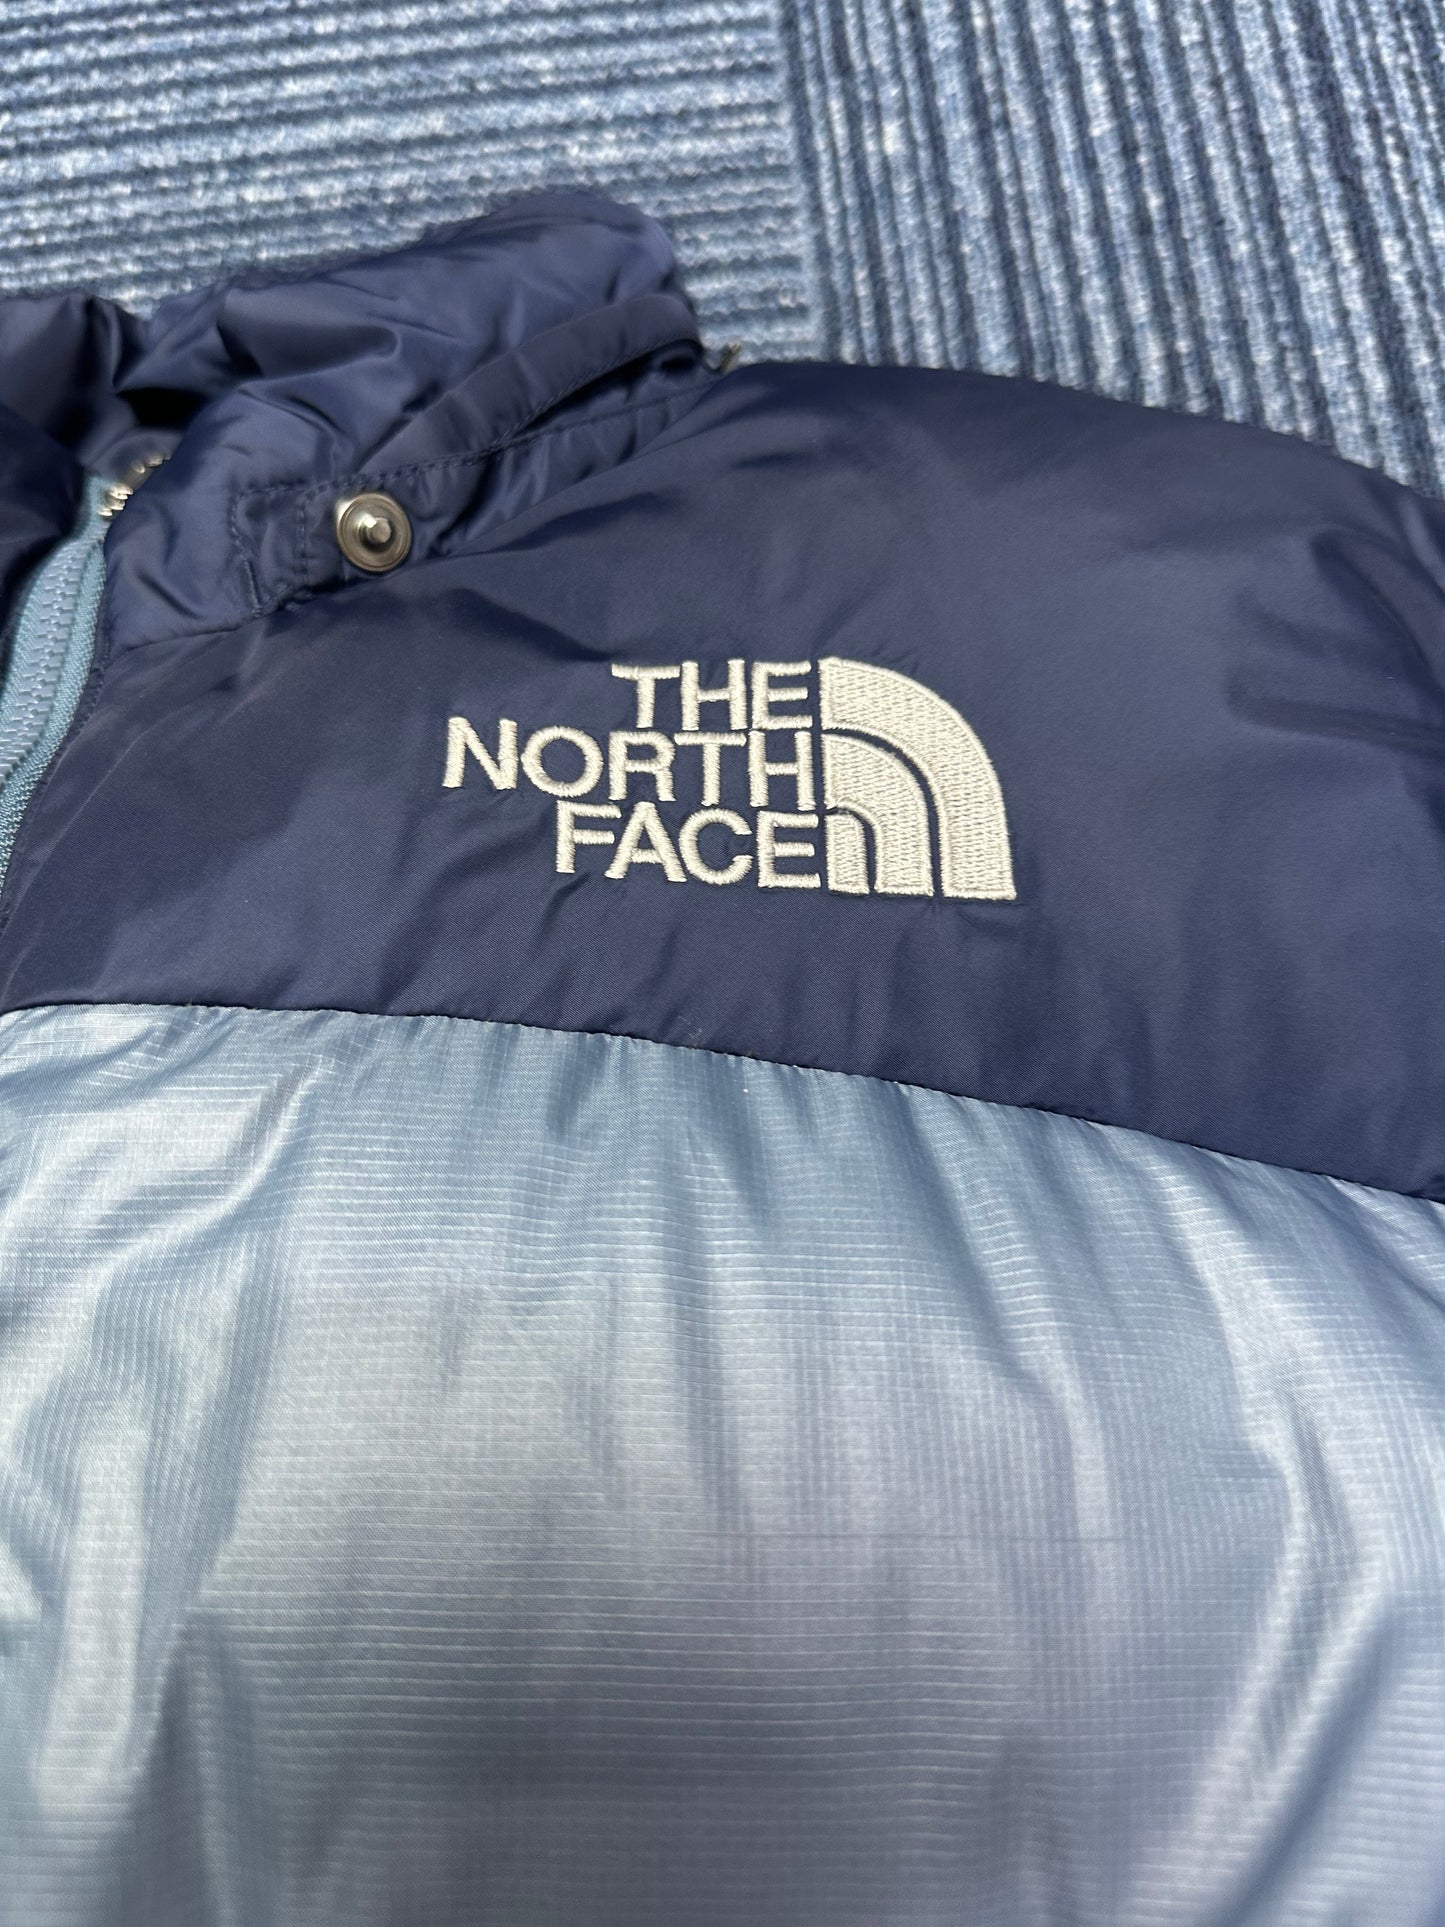 10013【THE NORTH FACE】ザノースフェイス メンズ ヌプシジャケット 700FP ネイビー×ブルーグレー 95(L)